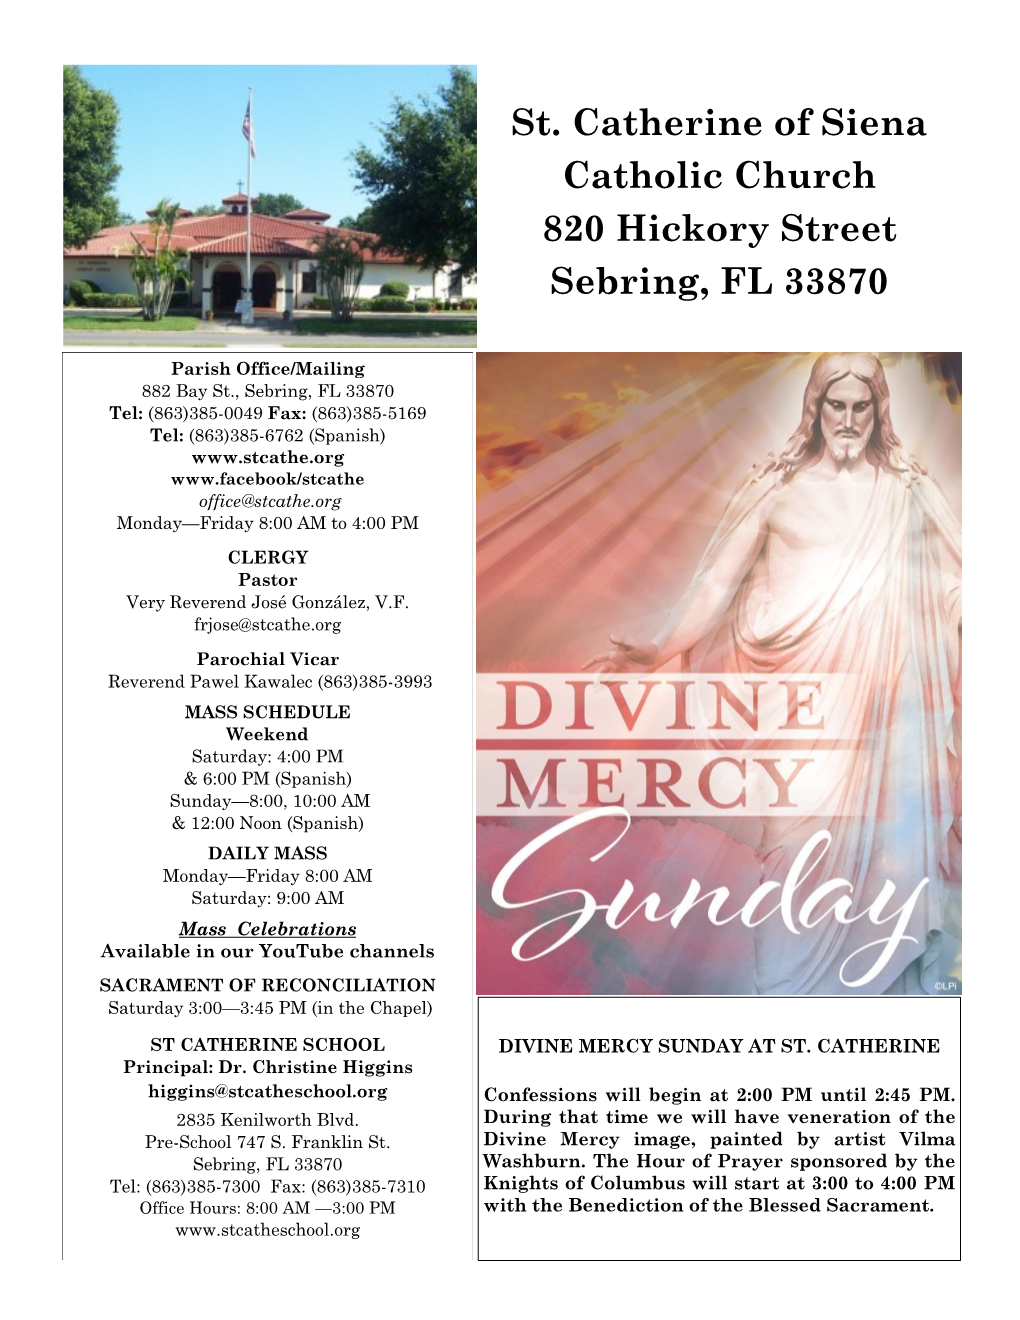 St. Catherine of Siena Catholic Church 820 Hickory Street Sebring, FL 33870